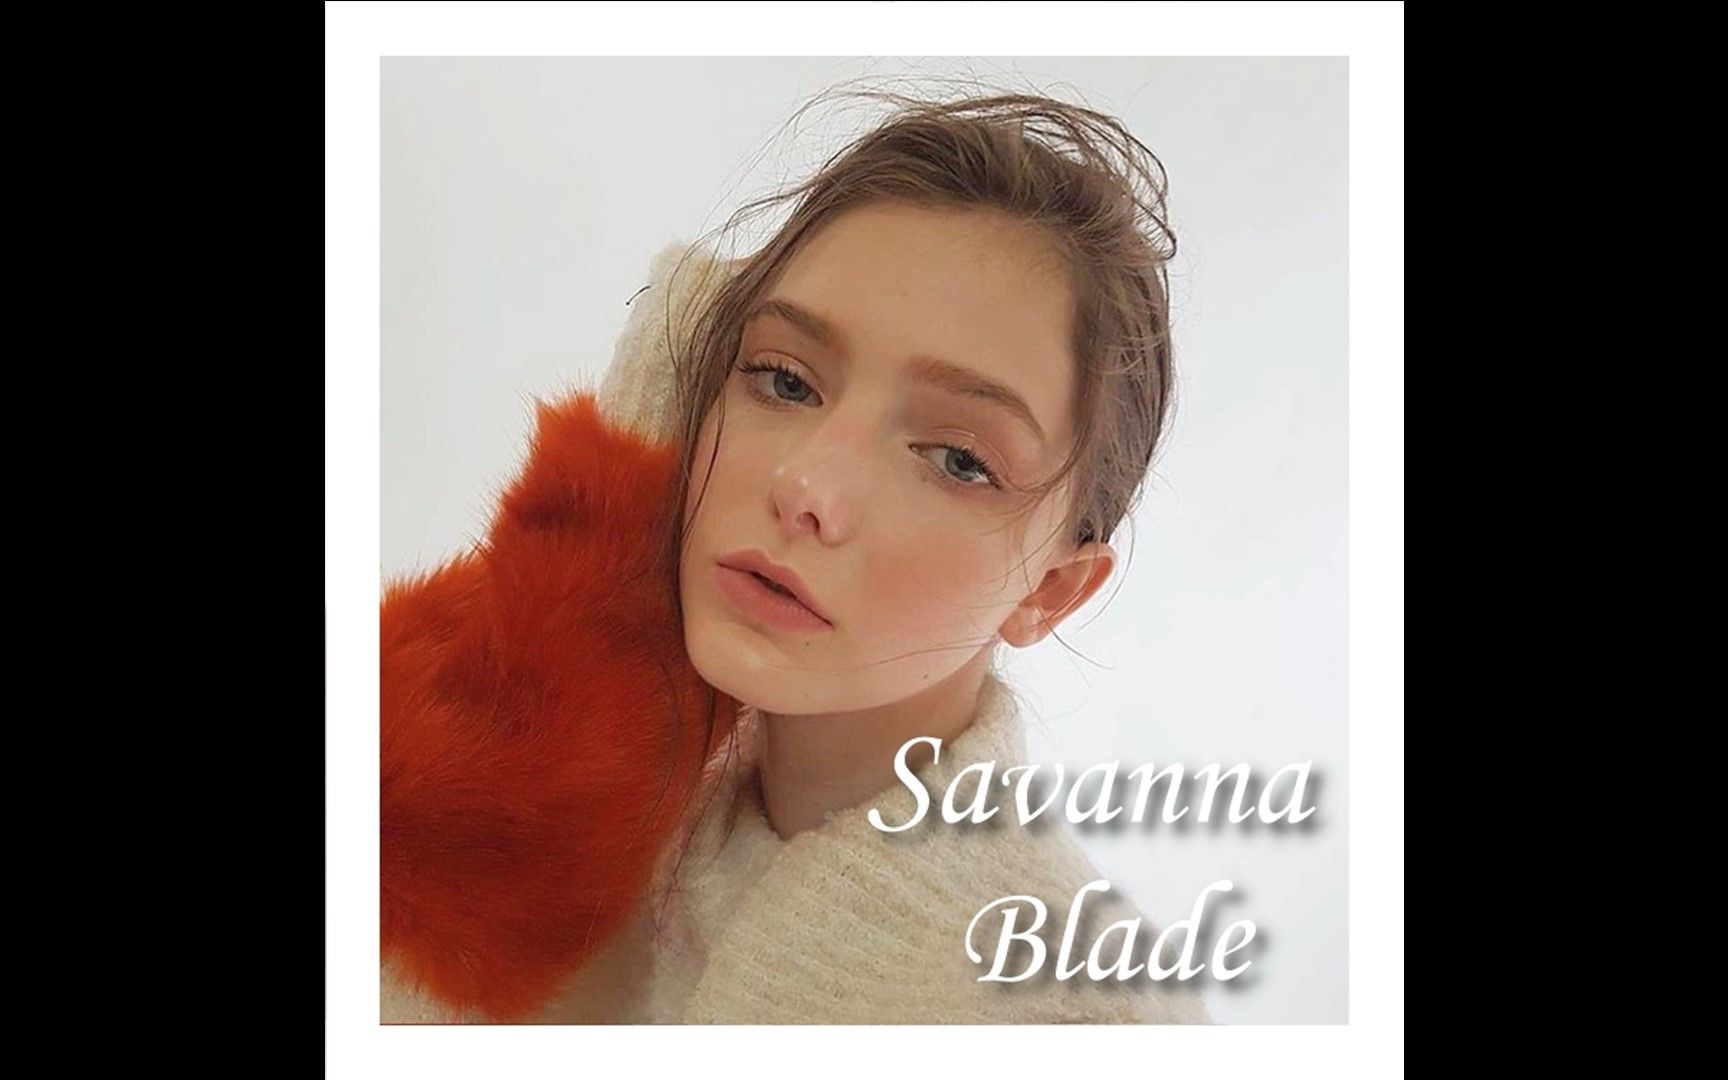 【savanna blade】instagram 选集 ①